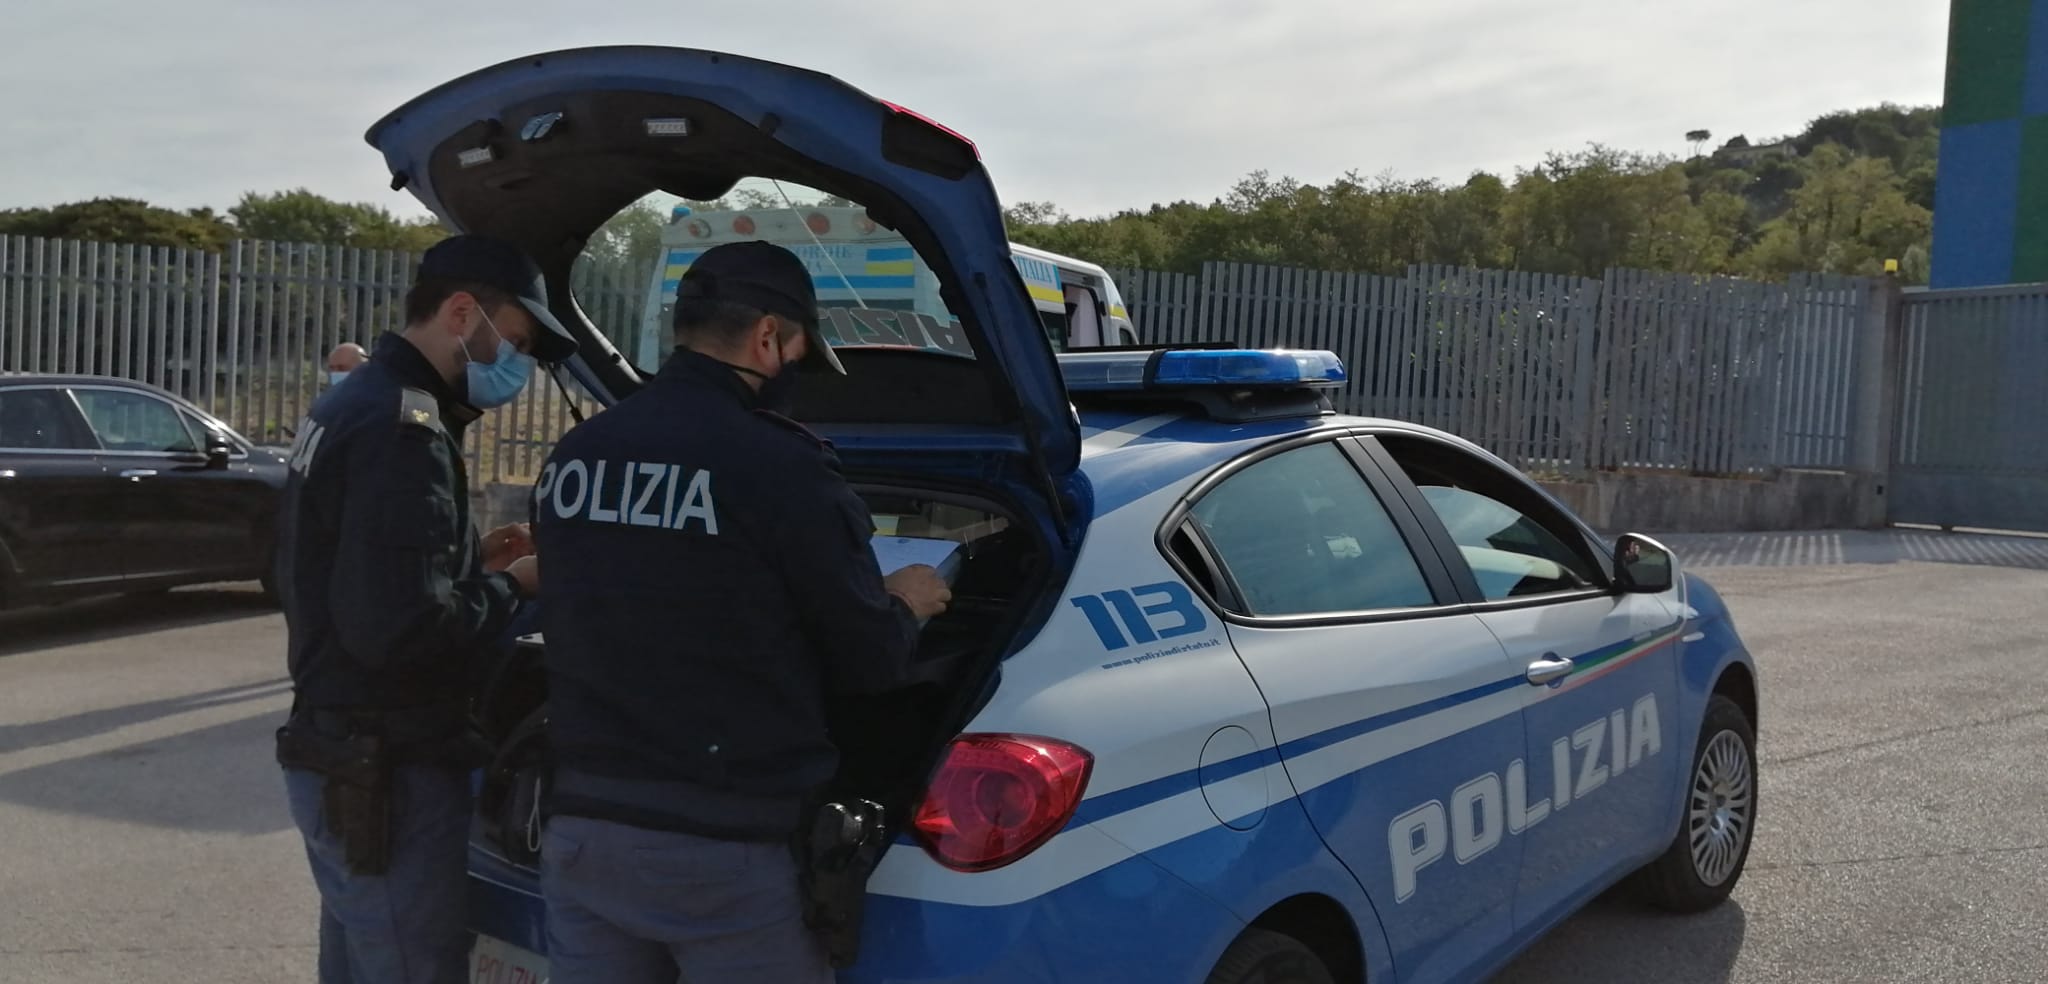 Avellino| Operazione antidroga in città, arresti a Rione Parco da parte della Squadra Mobile